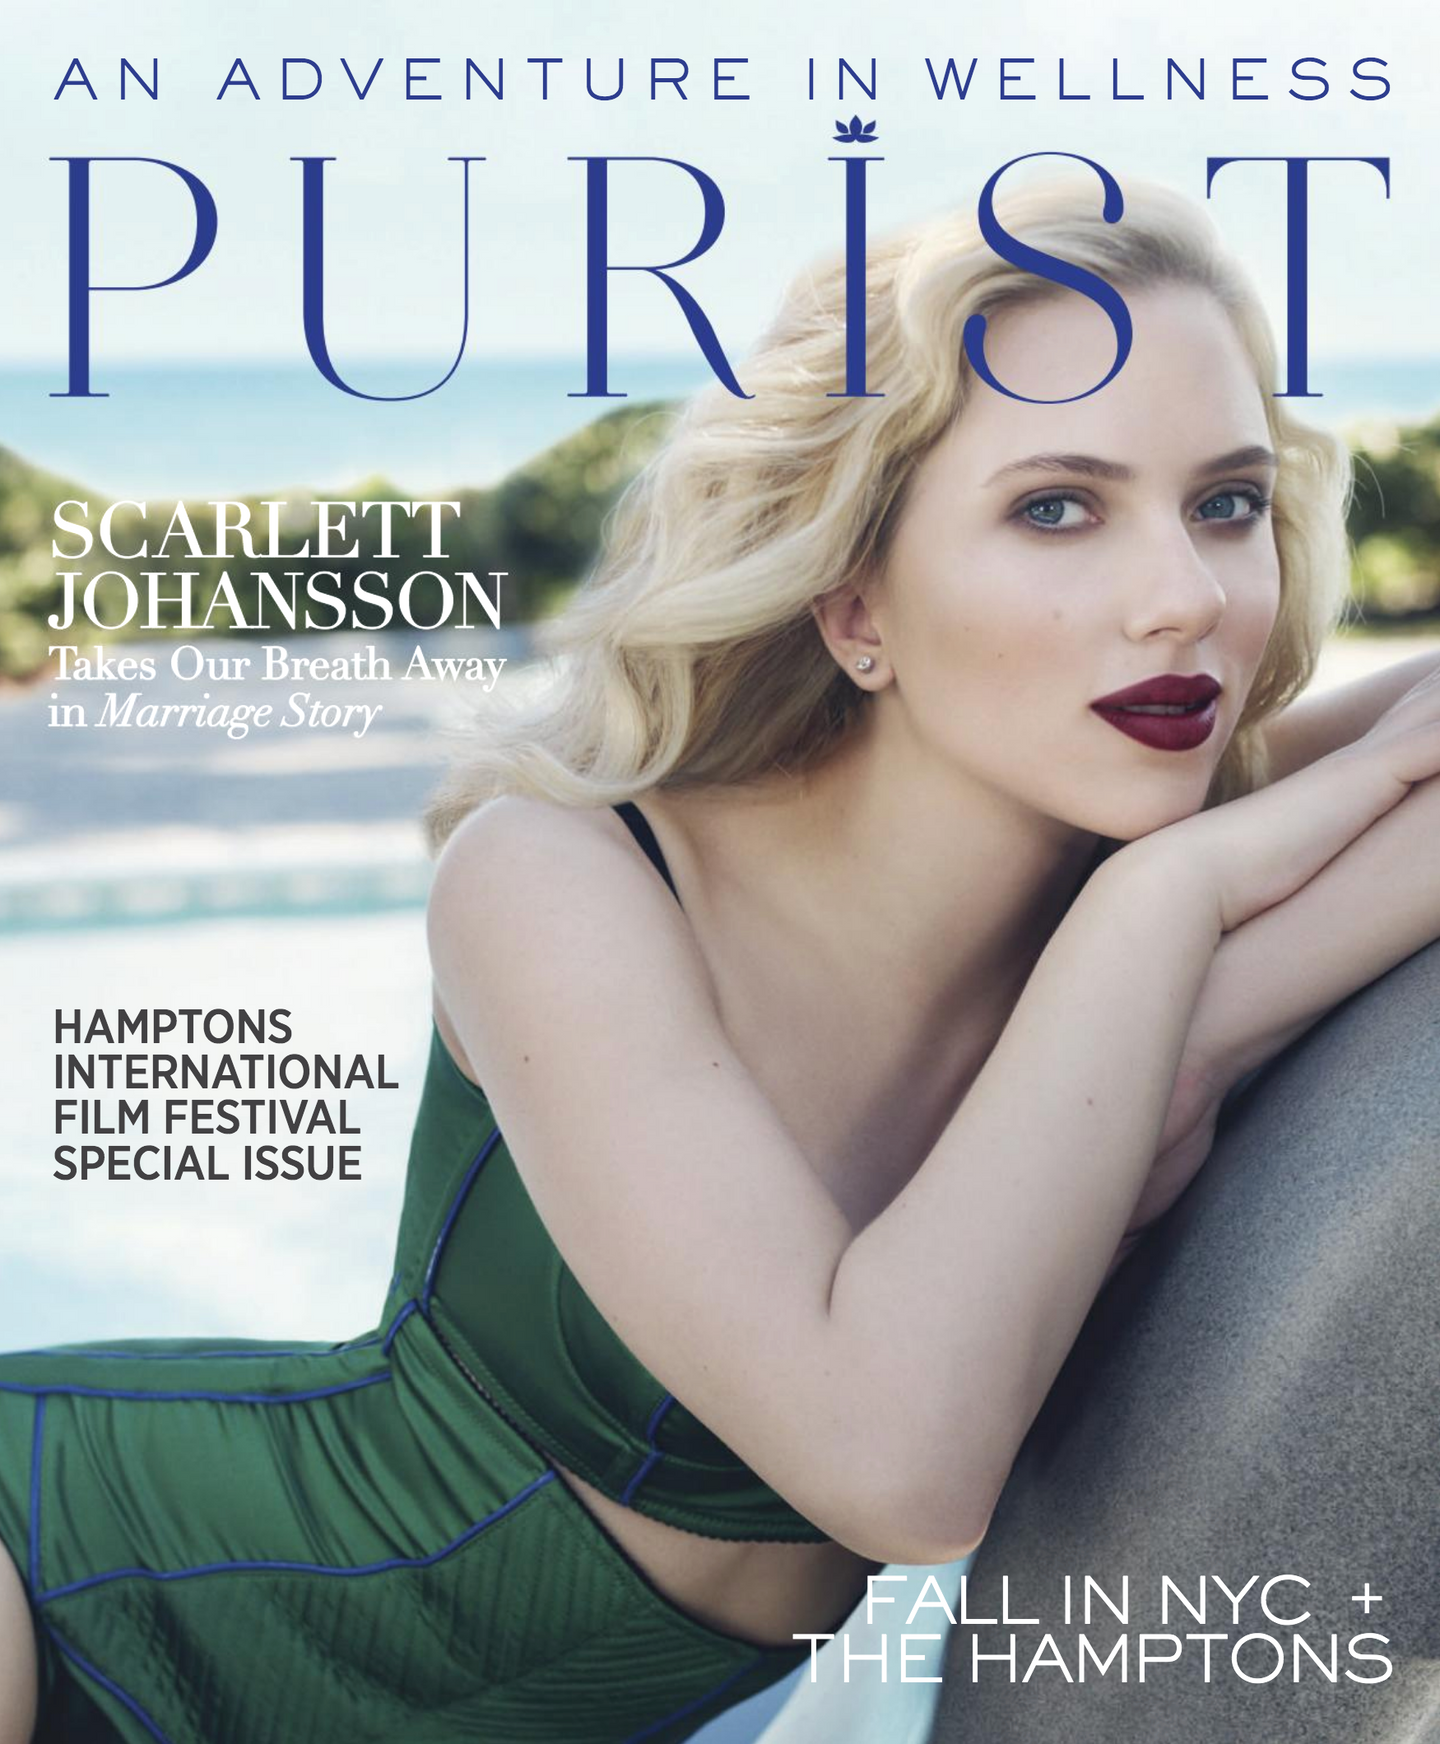 Scarlett Johansson leaning on rock